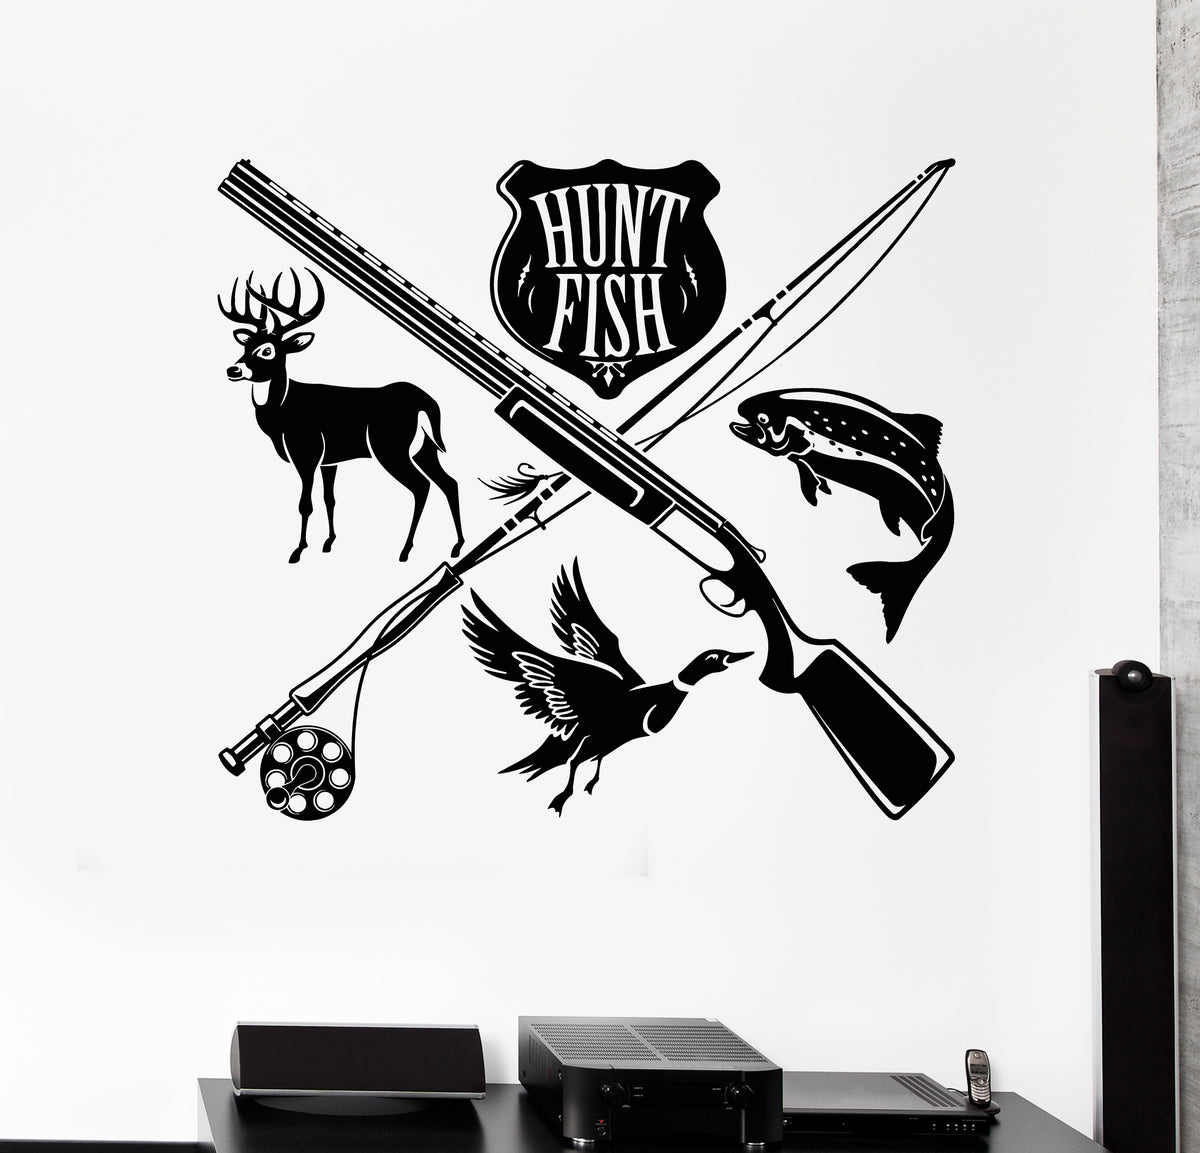  Fishing and Hunting Logo Wall Decal Hunter Hunting